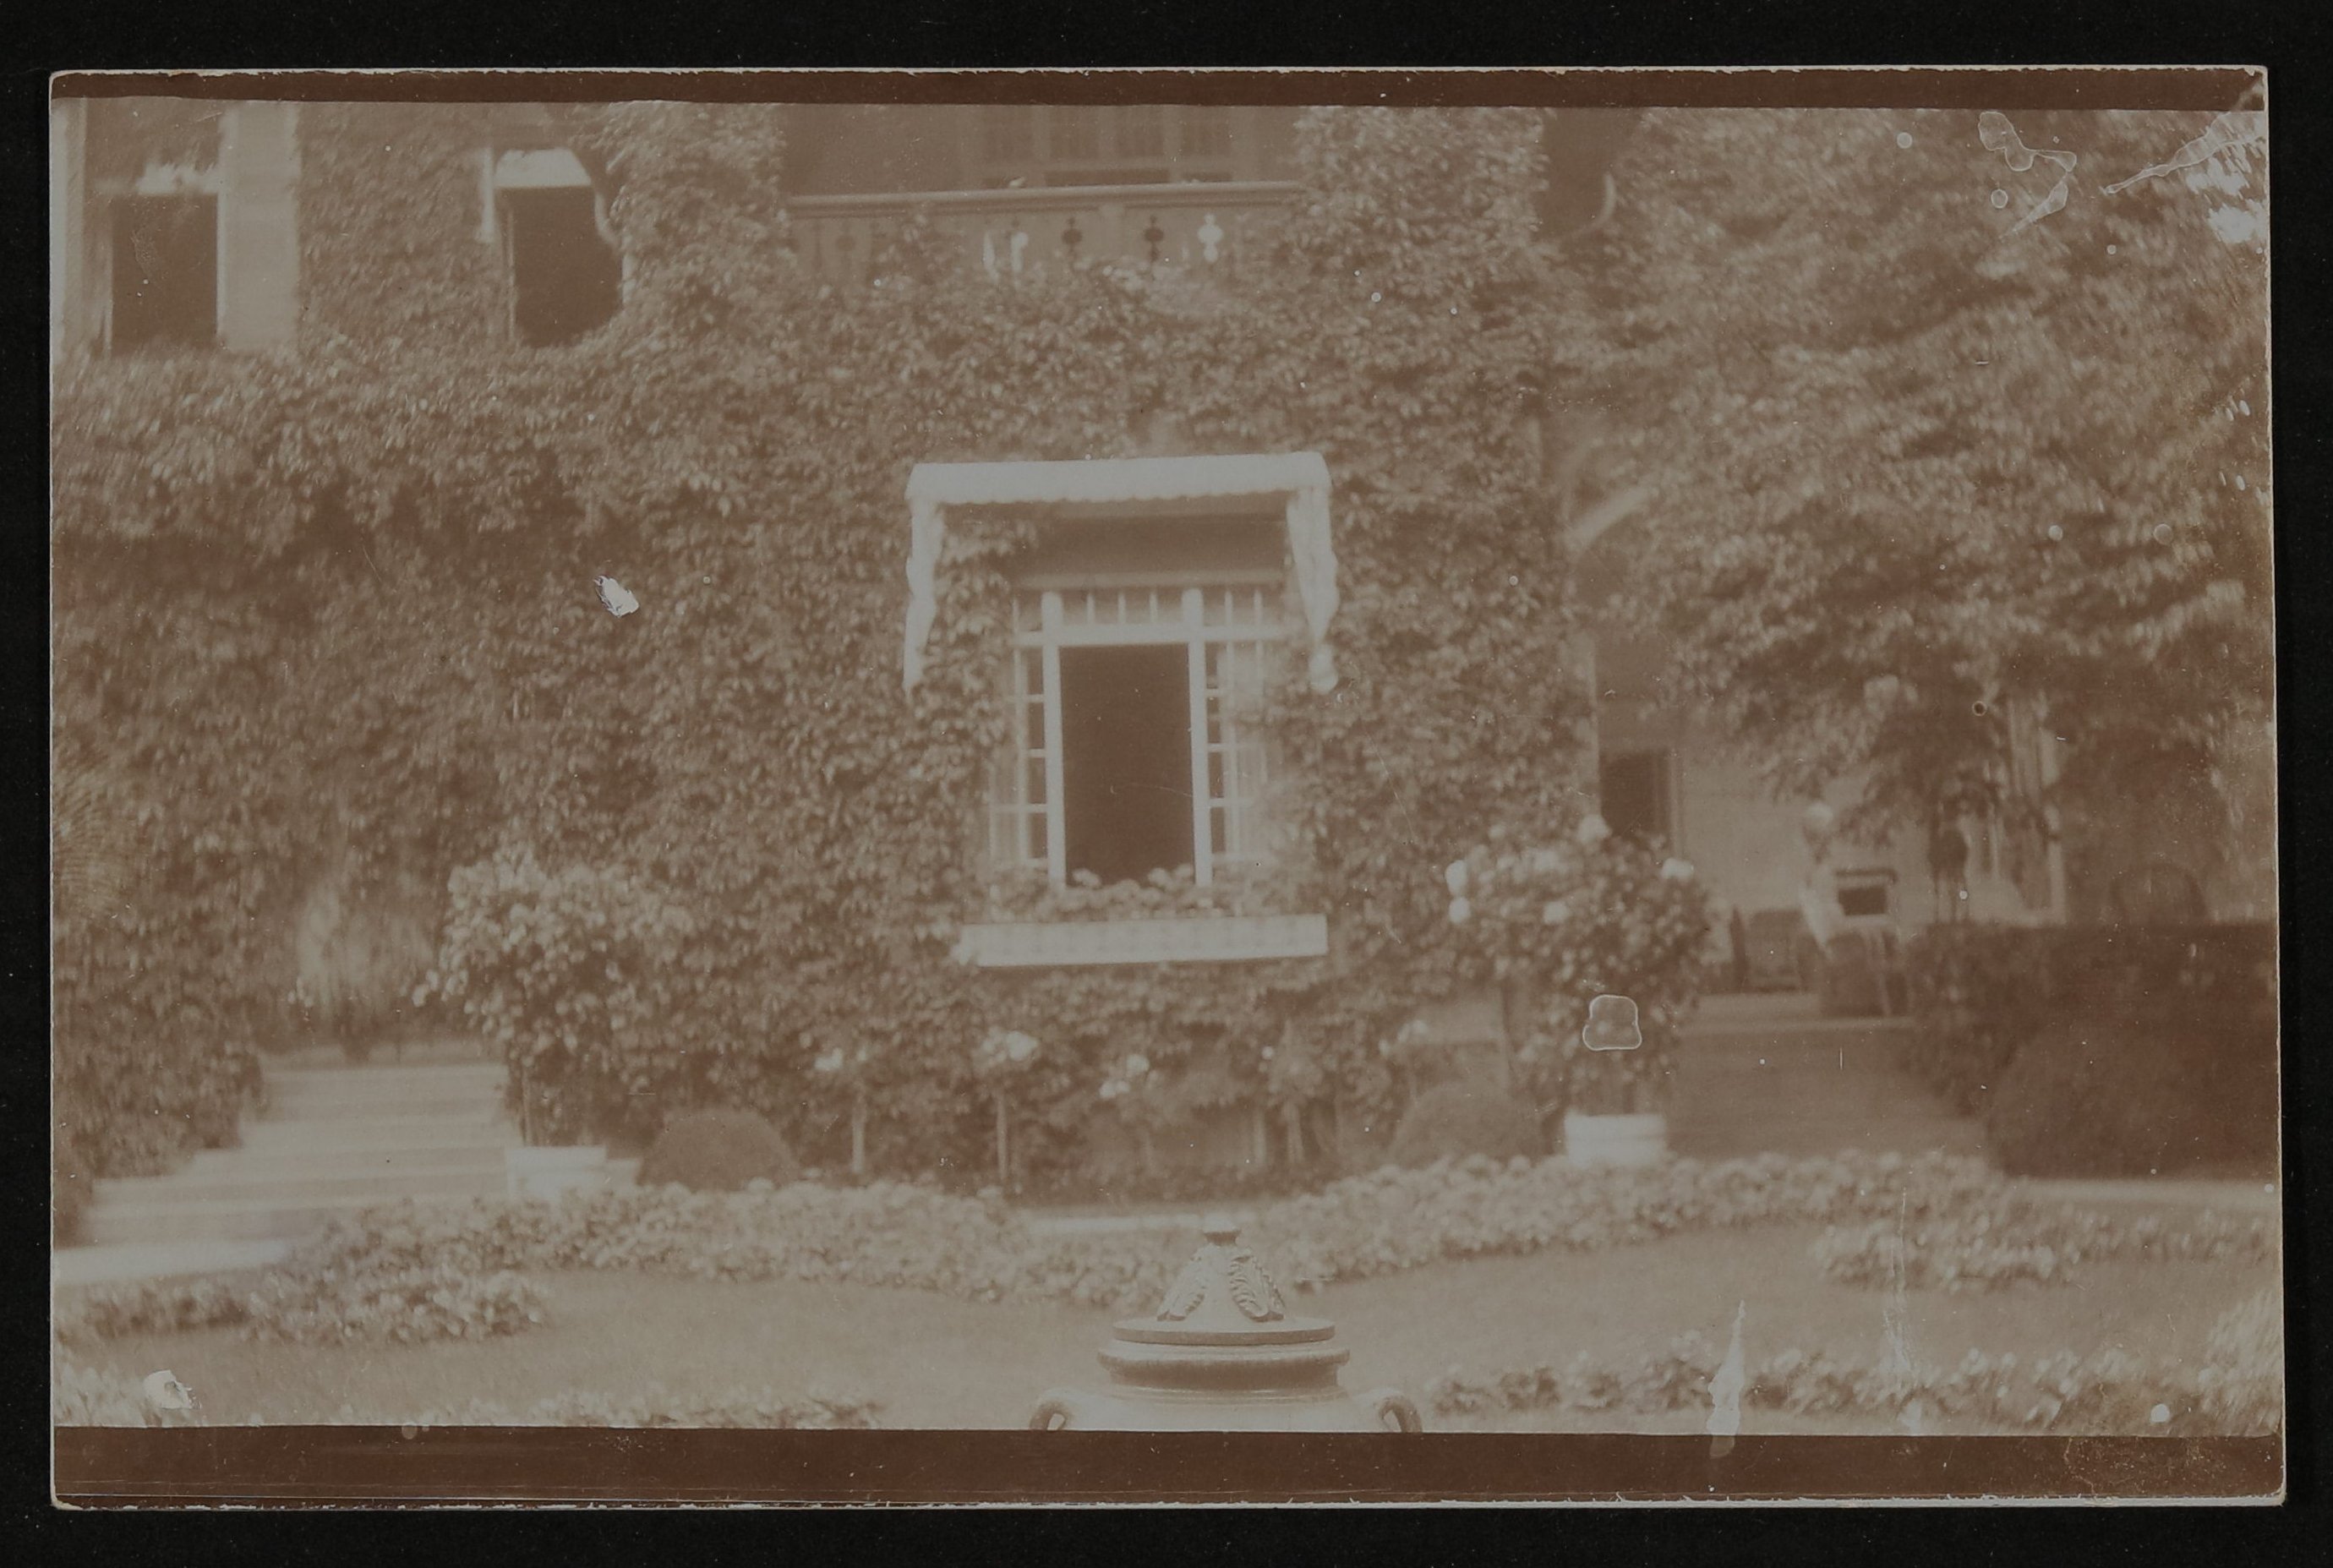 Ansichtskarte von Cornelie Richter an Hofmannsthal mit Ansicht einer mit Efeu bewachsenen Hausfassade (Freies Deutsches Hochstift / Frankfurter Goethe-Museum CC BY-NC-SA)